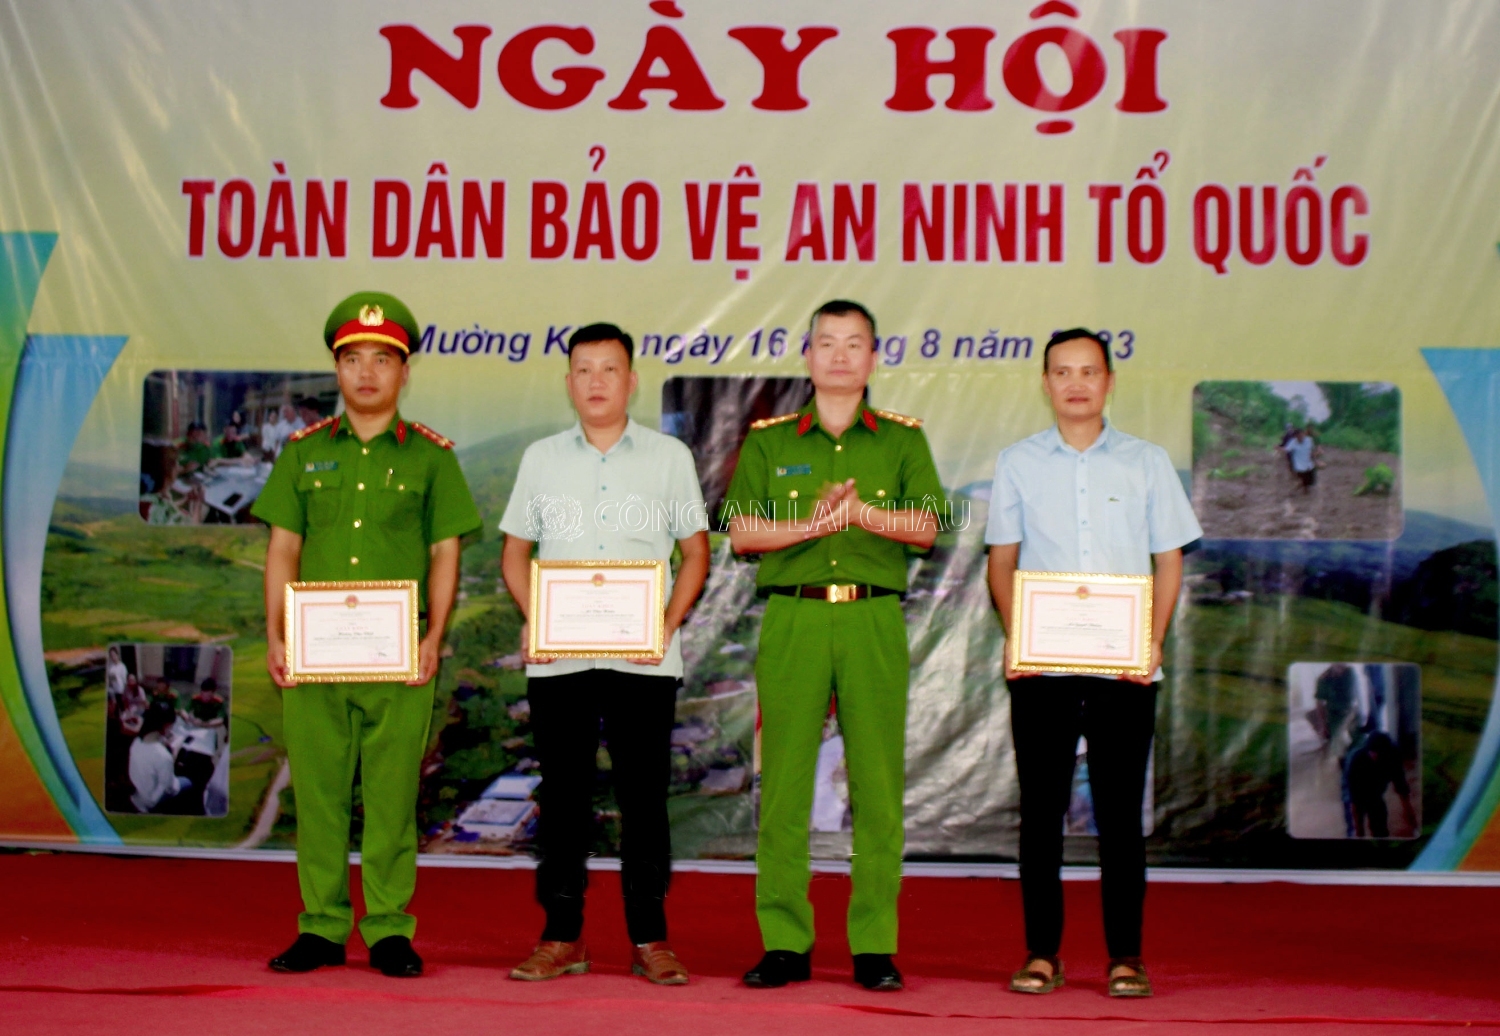 Đại tá Nguyễn Tuấn Hưng – Phó Giám đốc Công an tỉnh trao Giấy khen của Giám đốc Công an tỉnh cho các cá nhân